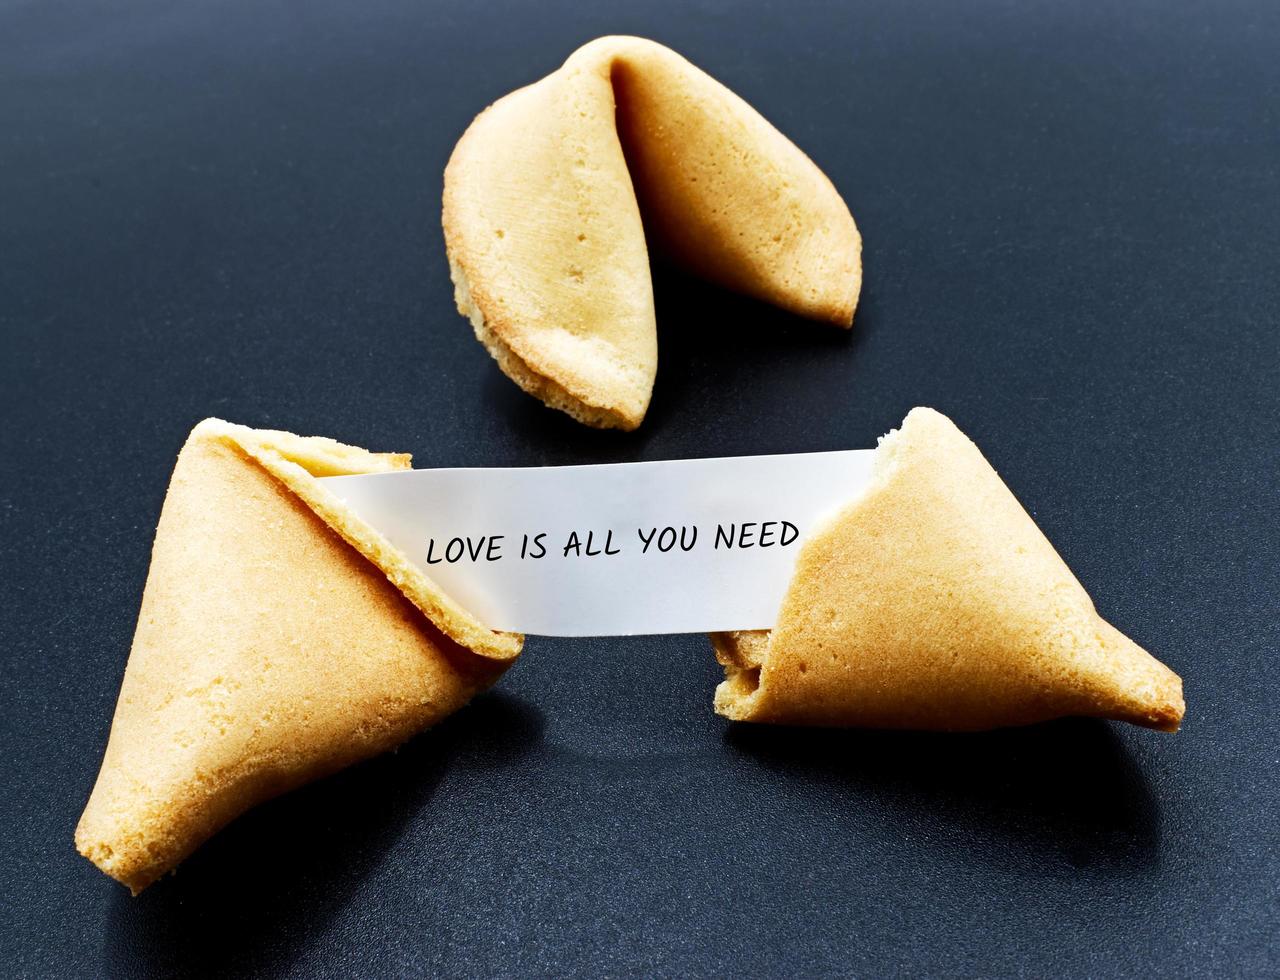 l'amour est tout ce dont vous avez besoin. citation de motivation dans un cookie chinois fissuré photo